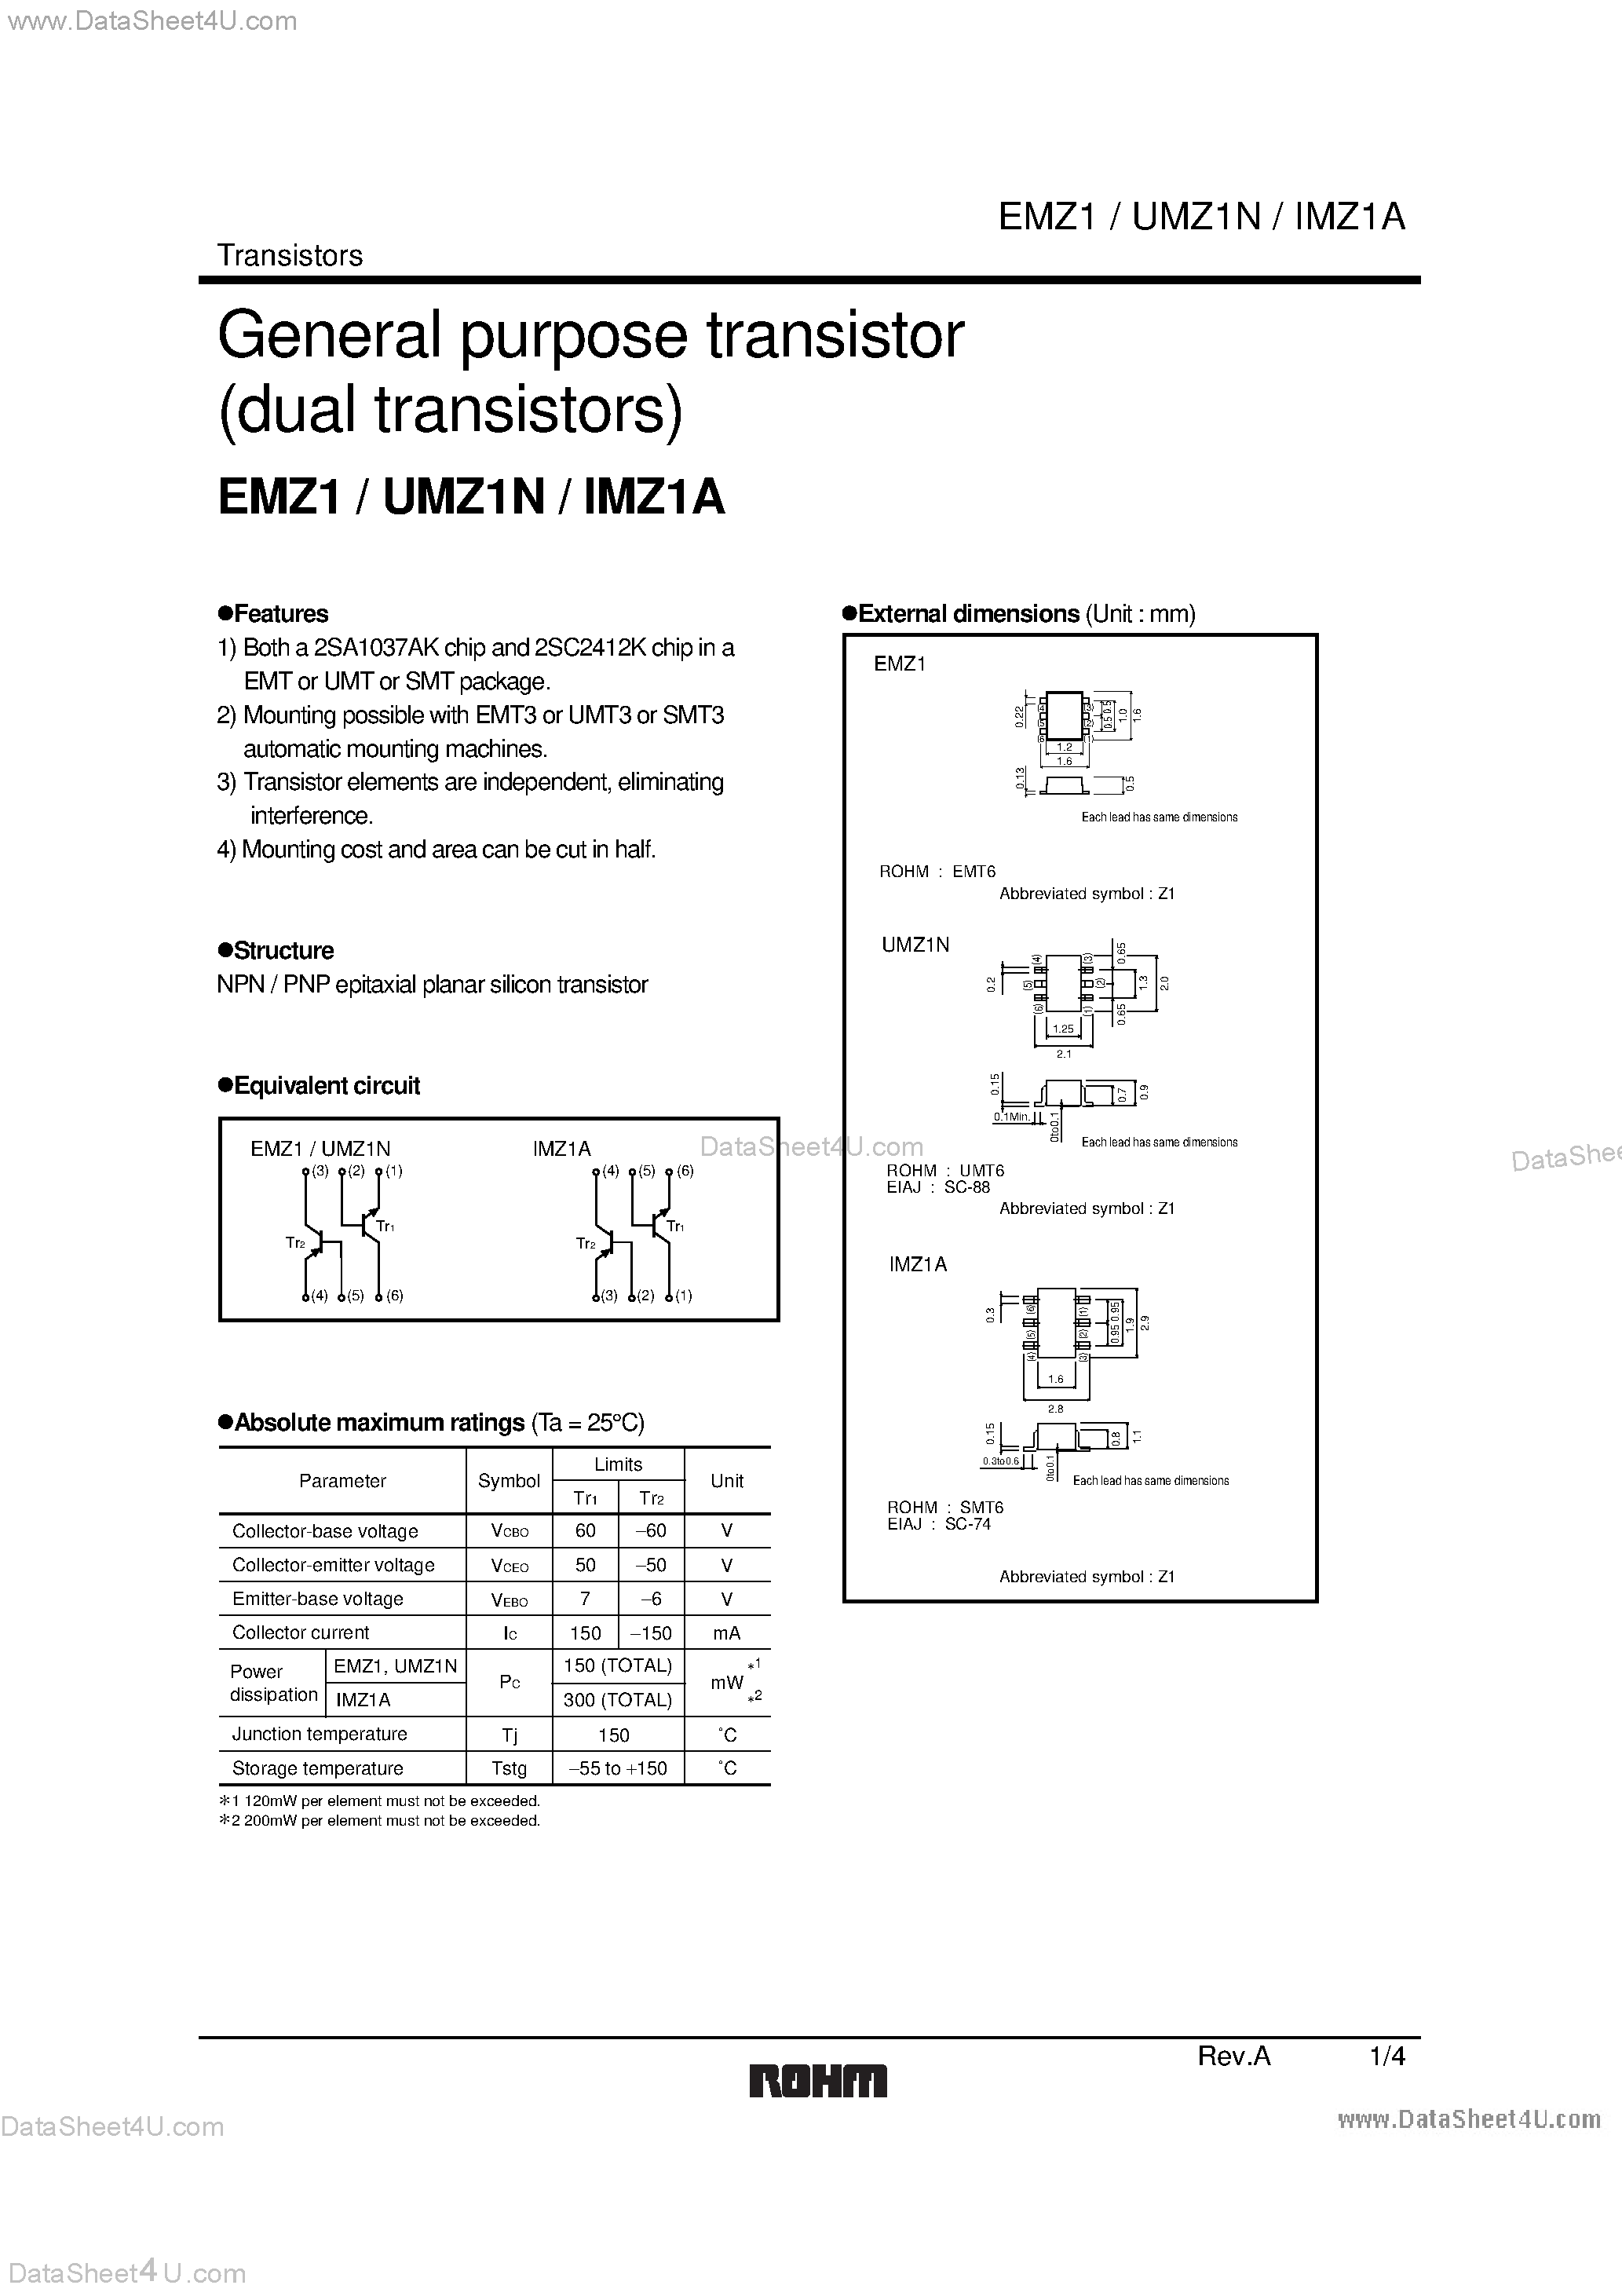 Даташит EMZ1 - General purpose transistor (dual transistors) страница 1